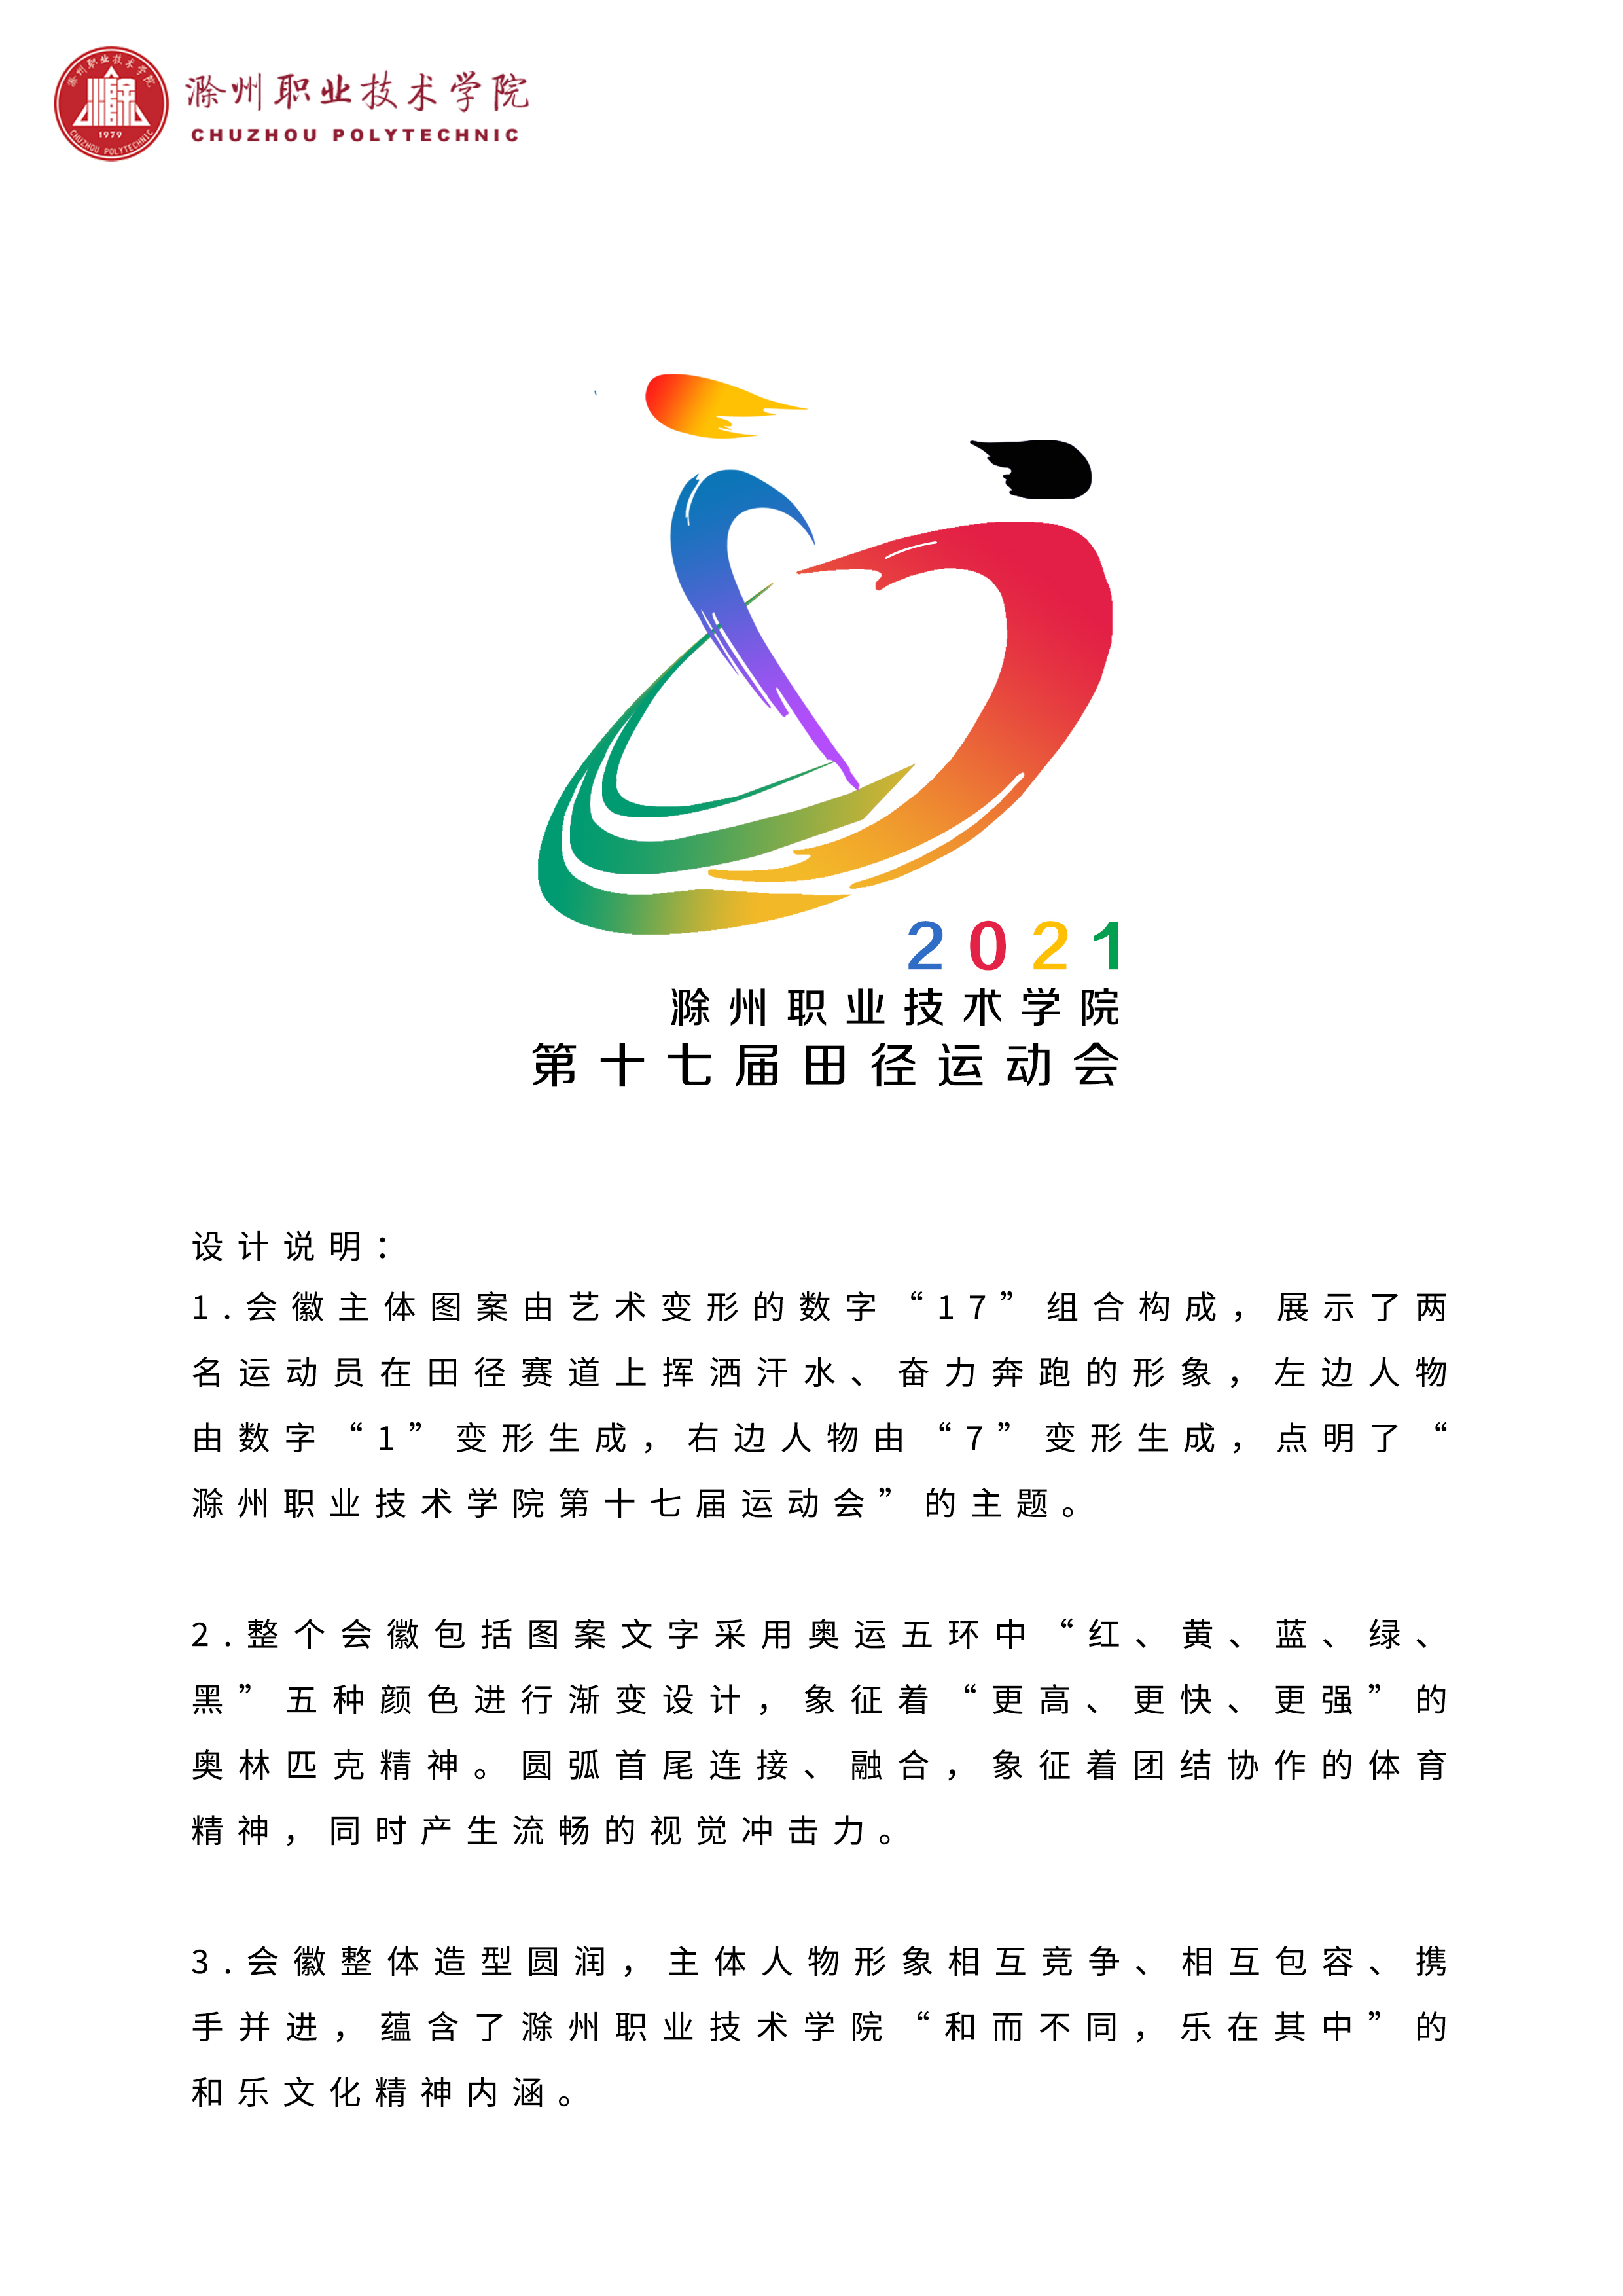 滁州职业技术学院第十七届田径运动会会徽设计获奖作品及采纳方案公示